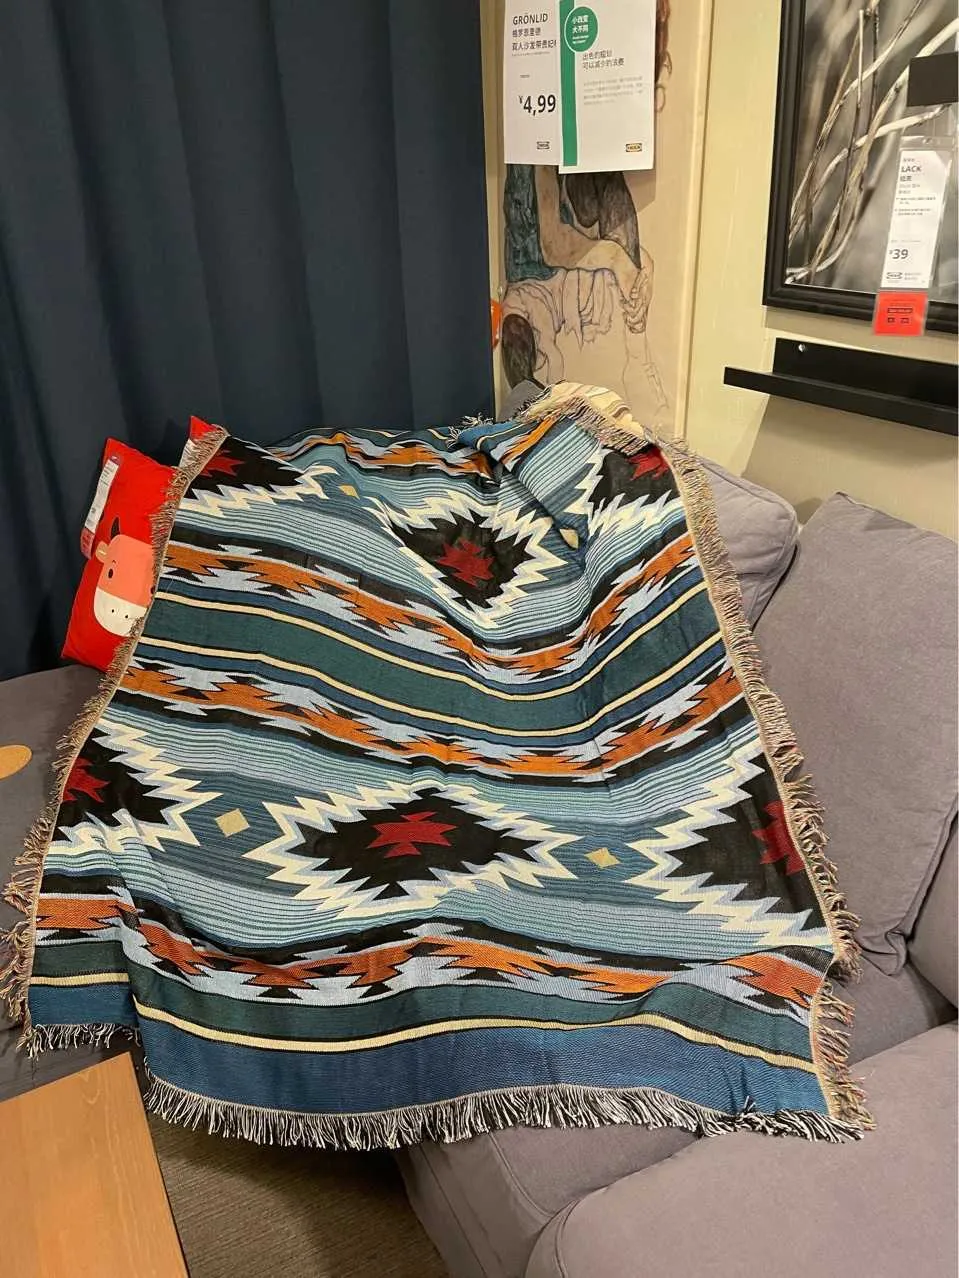 Couverture de loisirs nordique décorative pour canapé-lit, couverture de canapé indien, serviette de pique-nique, tapis de voyage, couvre-lit, tapisserie bohème 211019